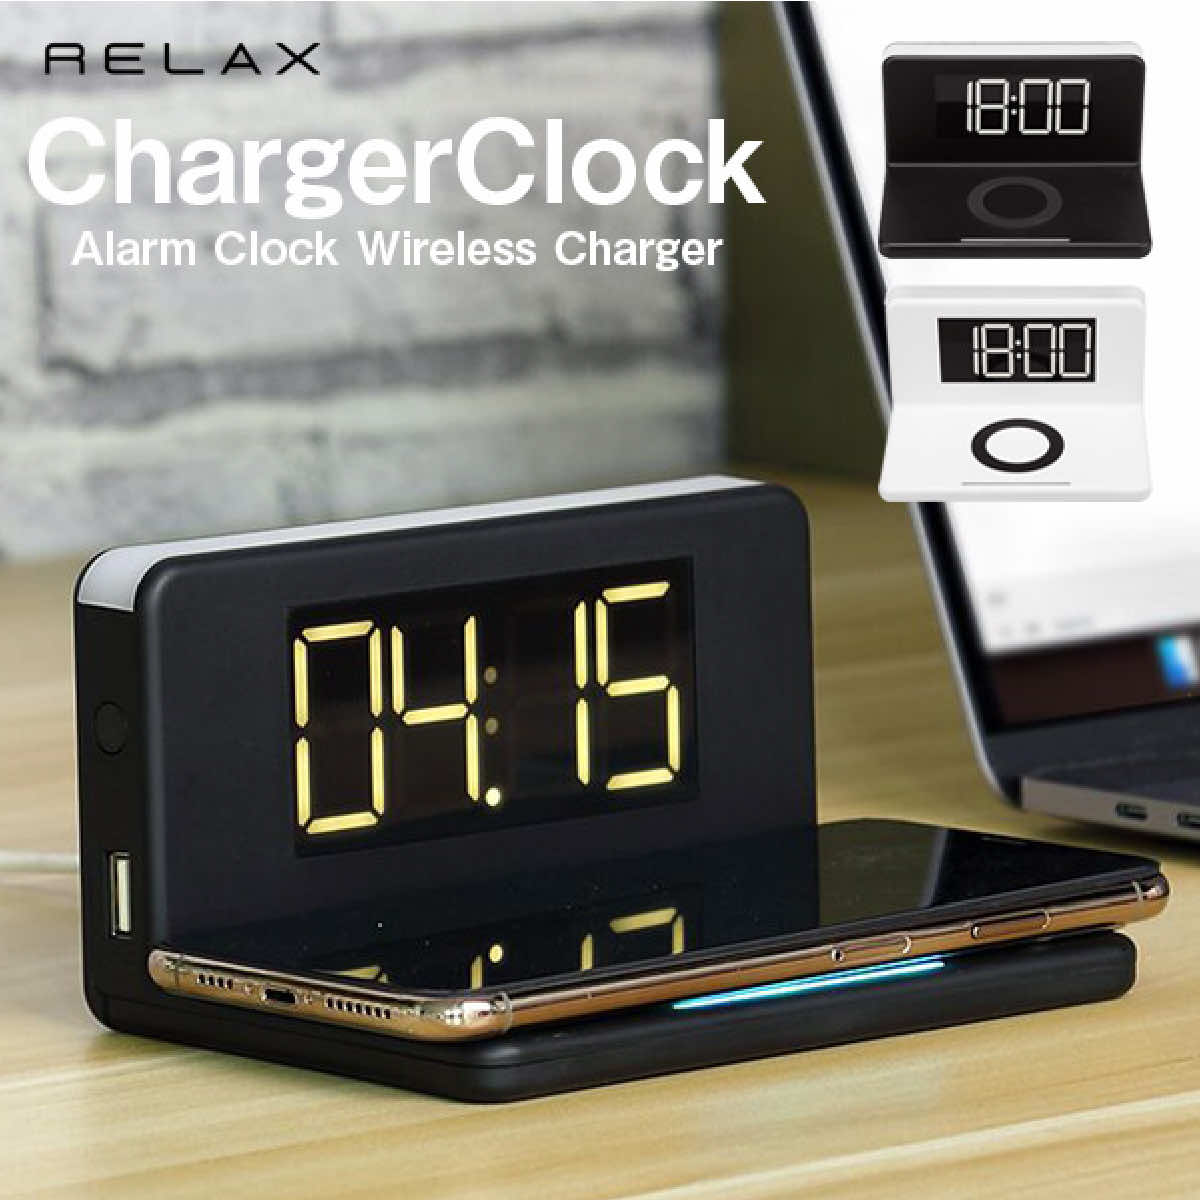 RELAX チャージャークロック ChargerClock ワイヤレス 充電 目覚まし時計 ナイトライト USB出力 シンプル アラーム おもしろ雑貨 プレゼント ギフト 贈り物【ブラック】